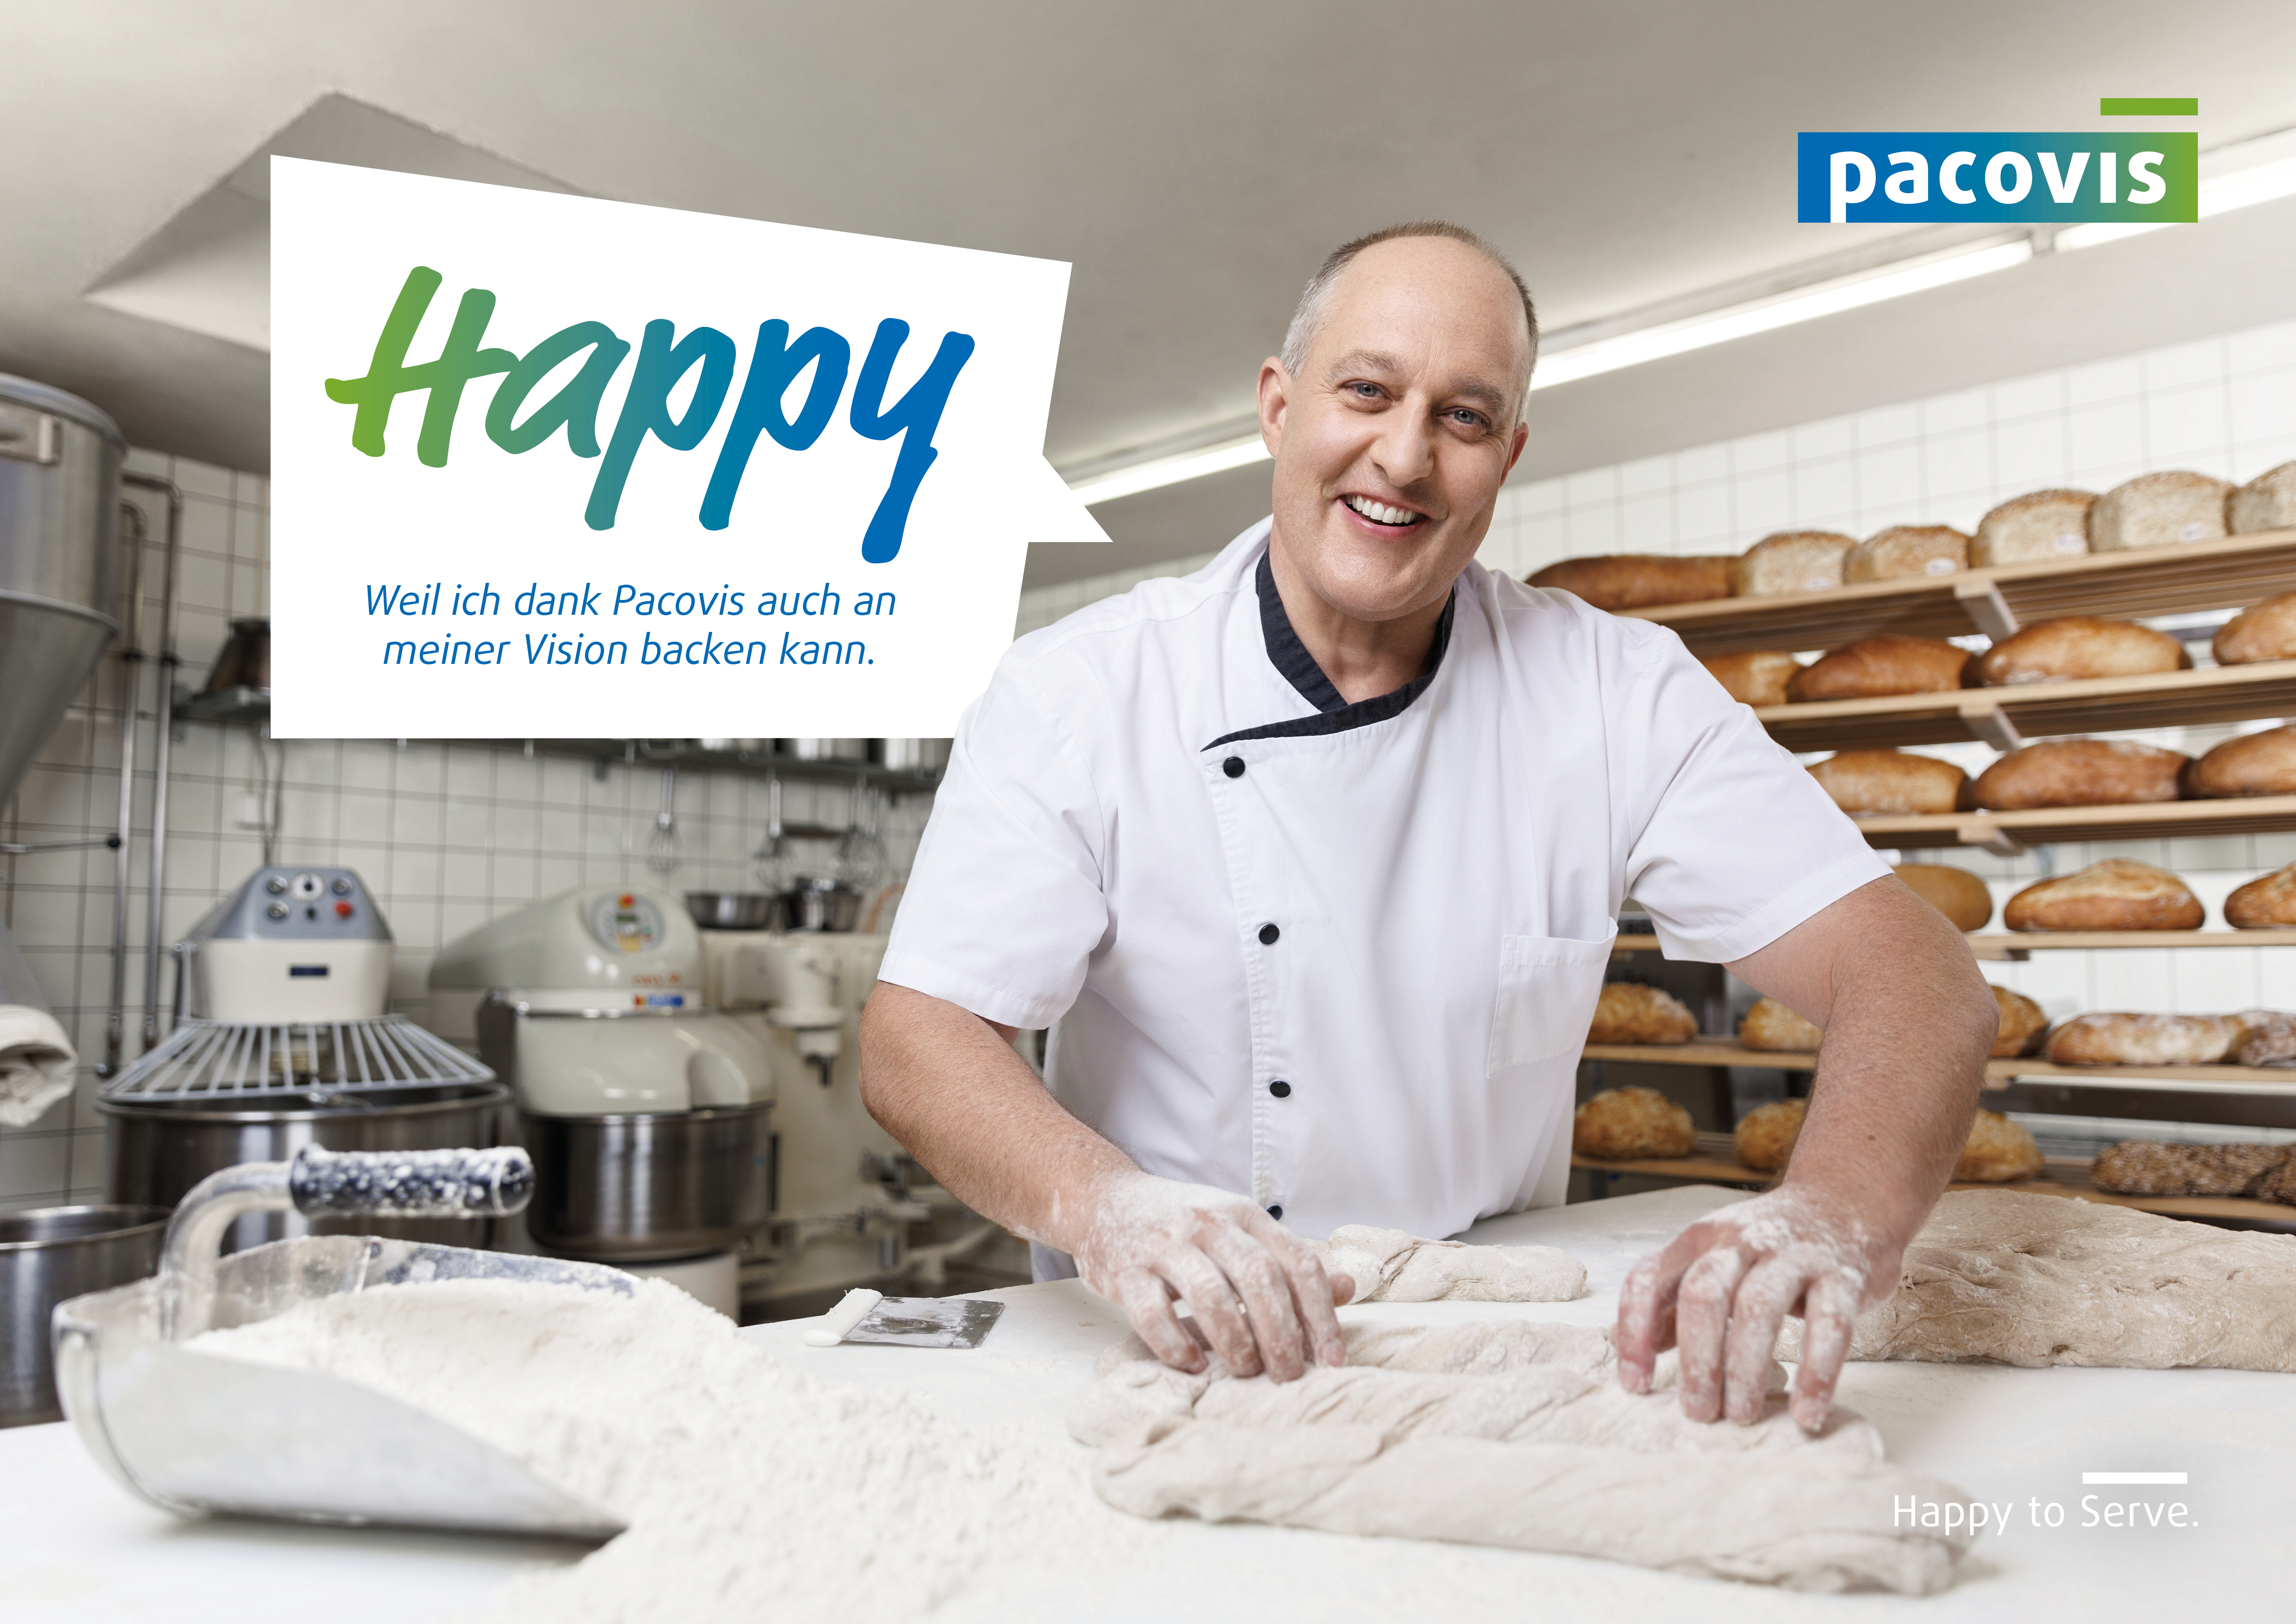 Bild aus der Pacovis-Imagekampagne mit glücklichem Bäcker und Text "Happy, weil ich dank Pacovis auch an meiner Vision backen kann."